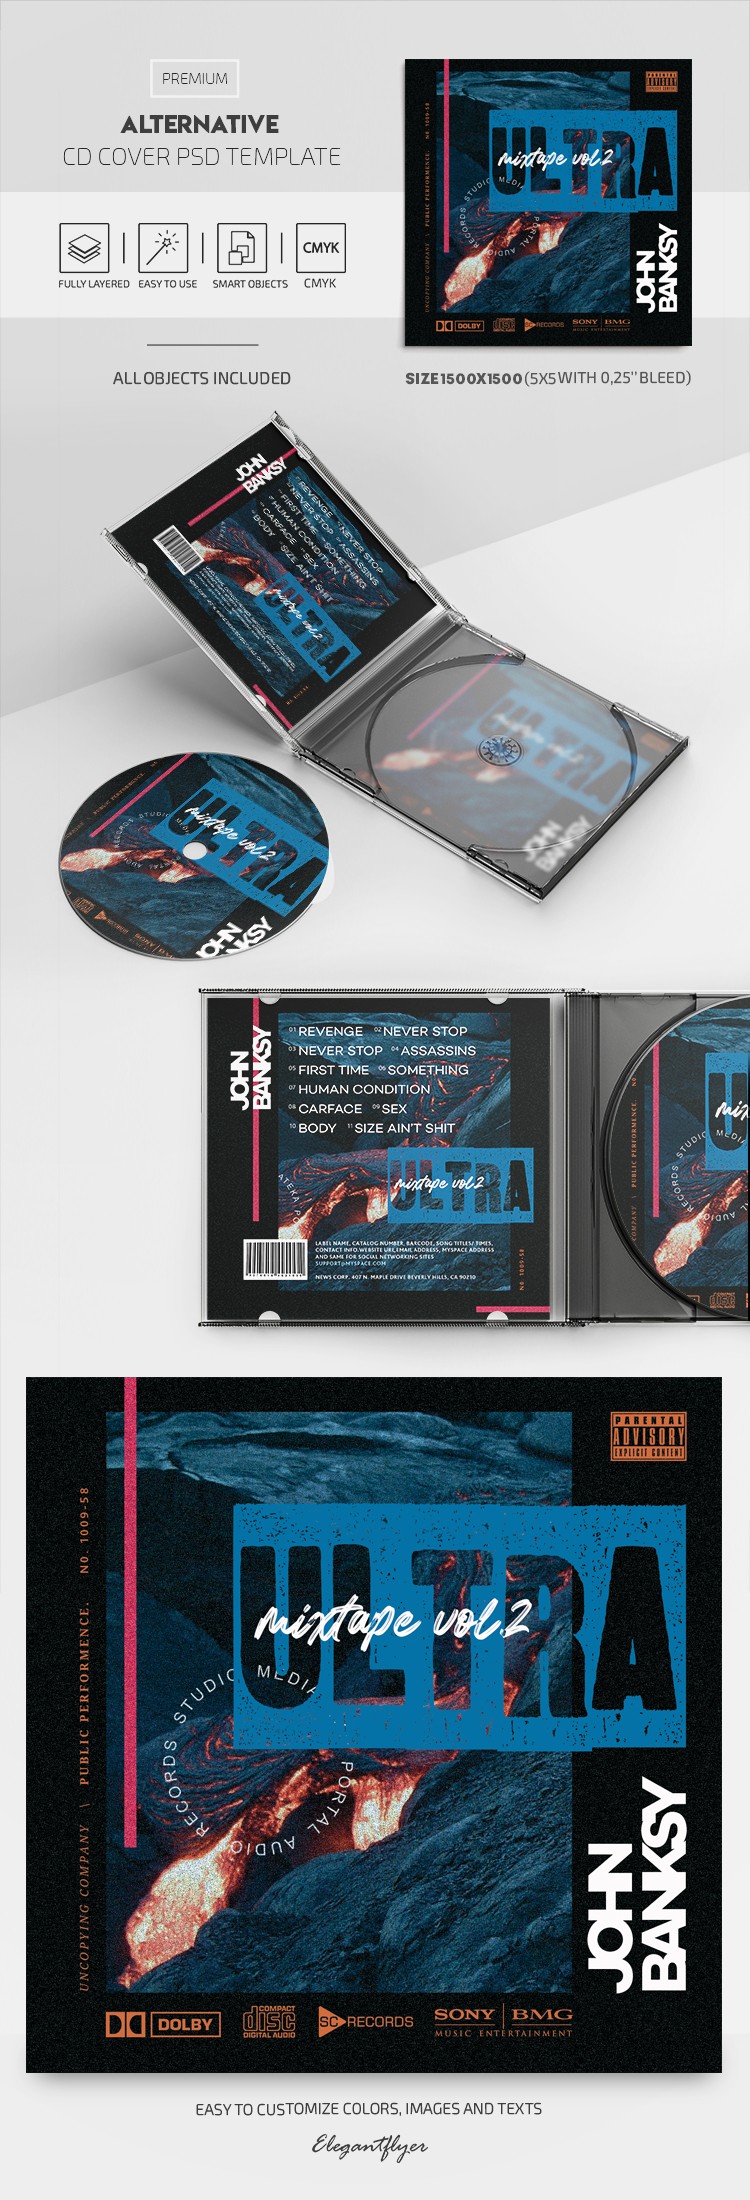 Capa alternativa do CD by ElegantFlyer